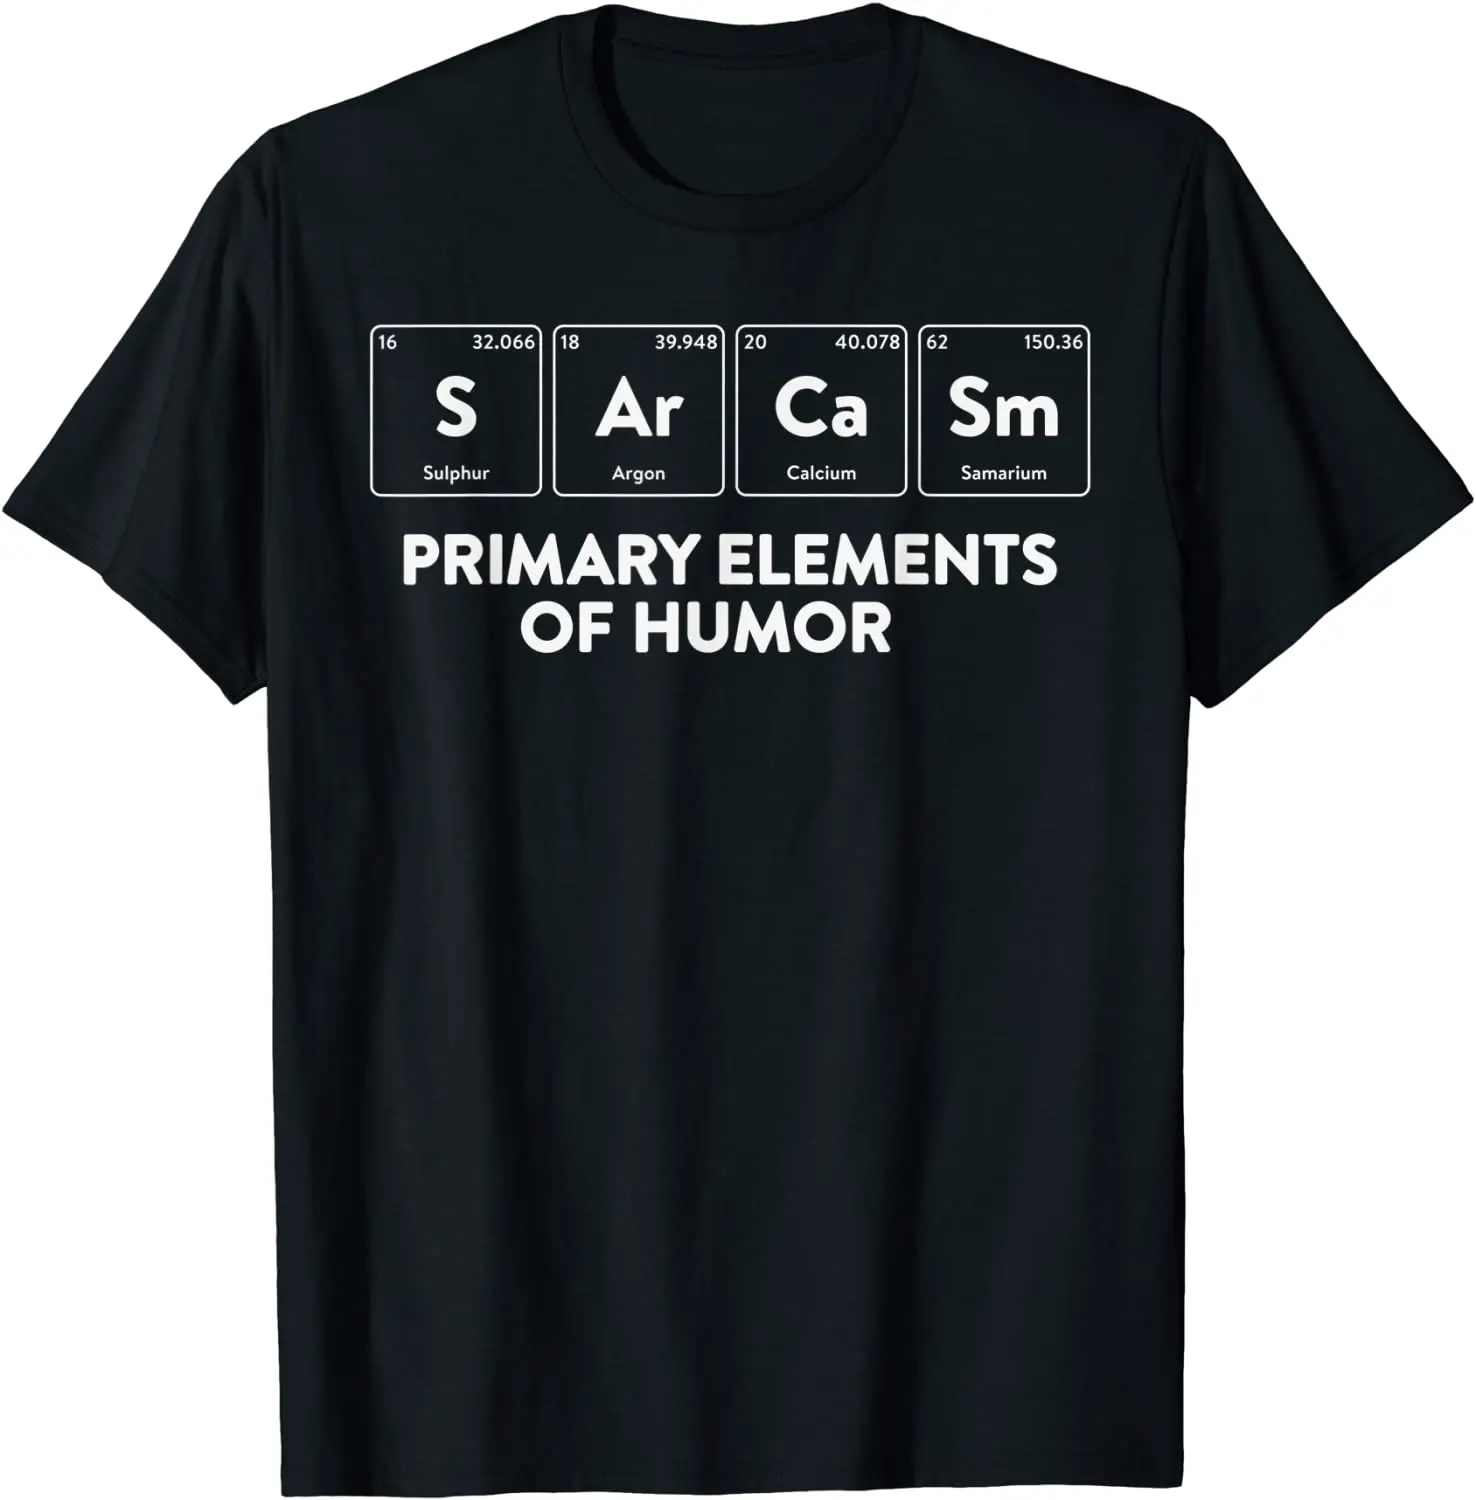 

Основные элементы юмора научная рубашка Sarcasm S Ar Ca Sm футболка